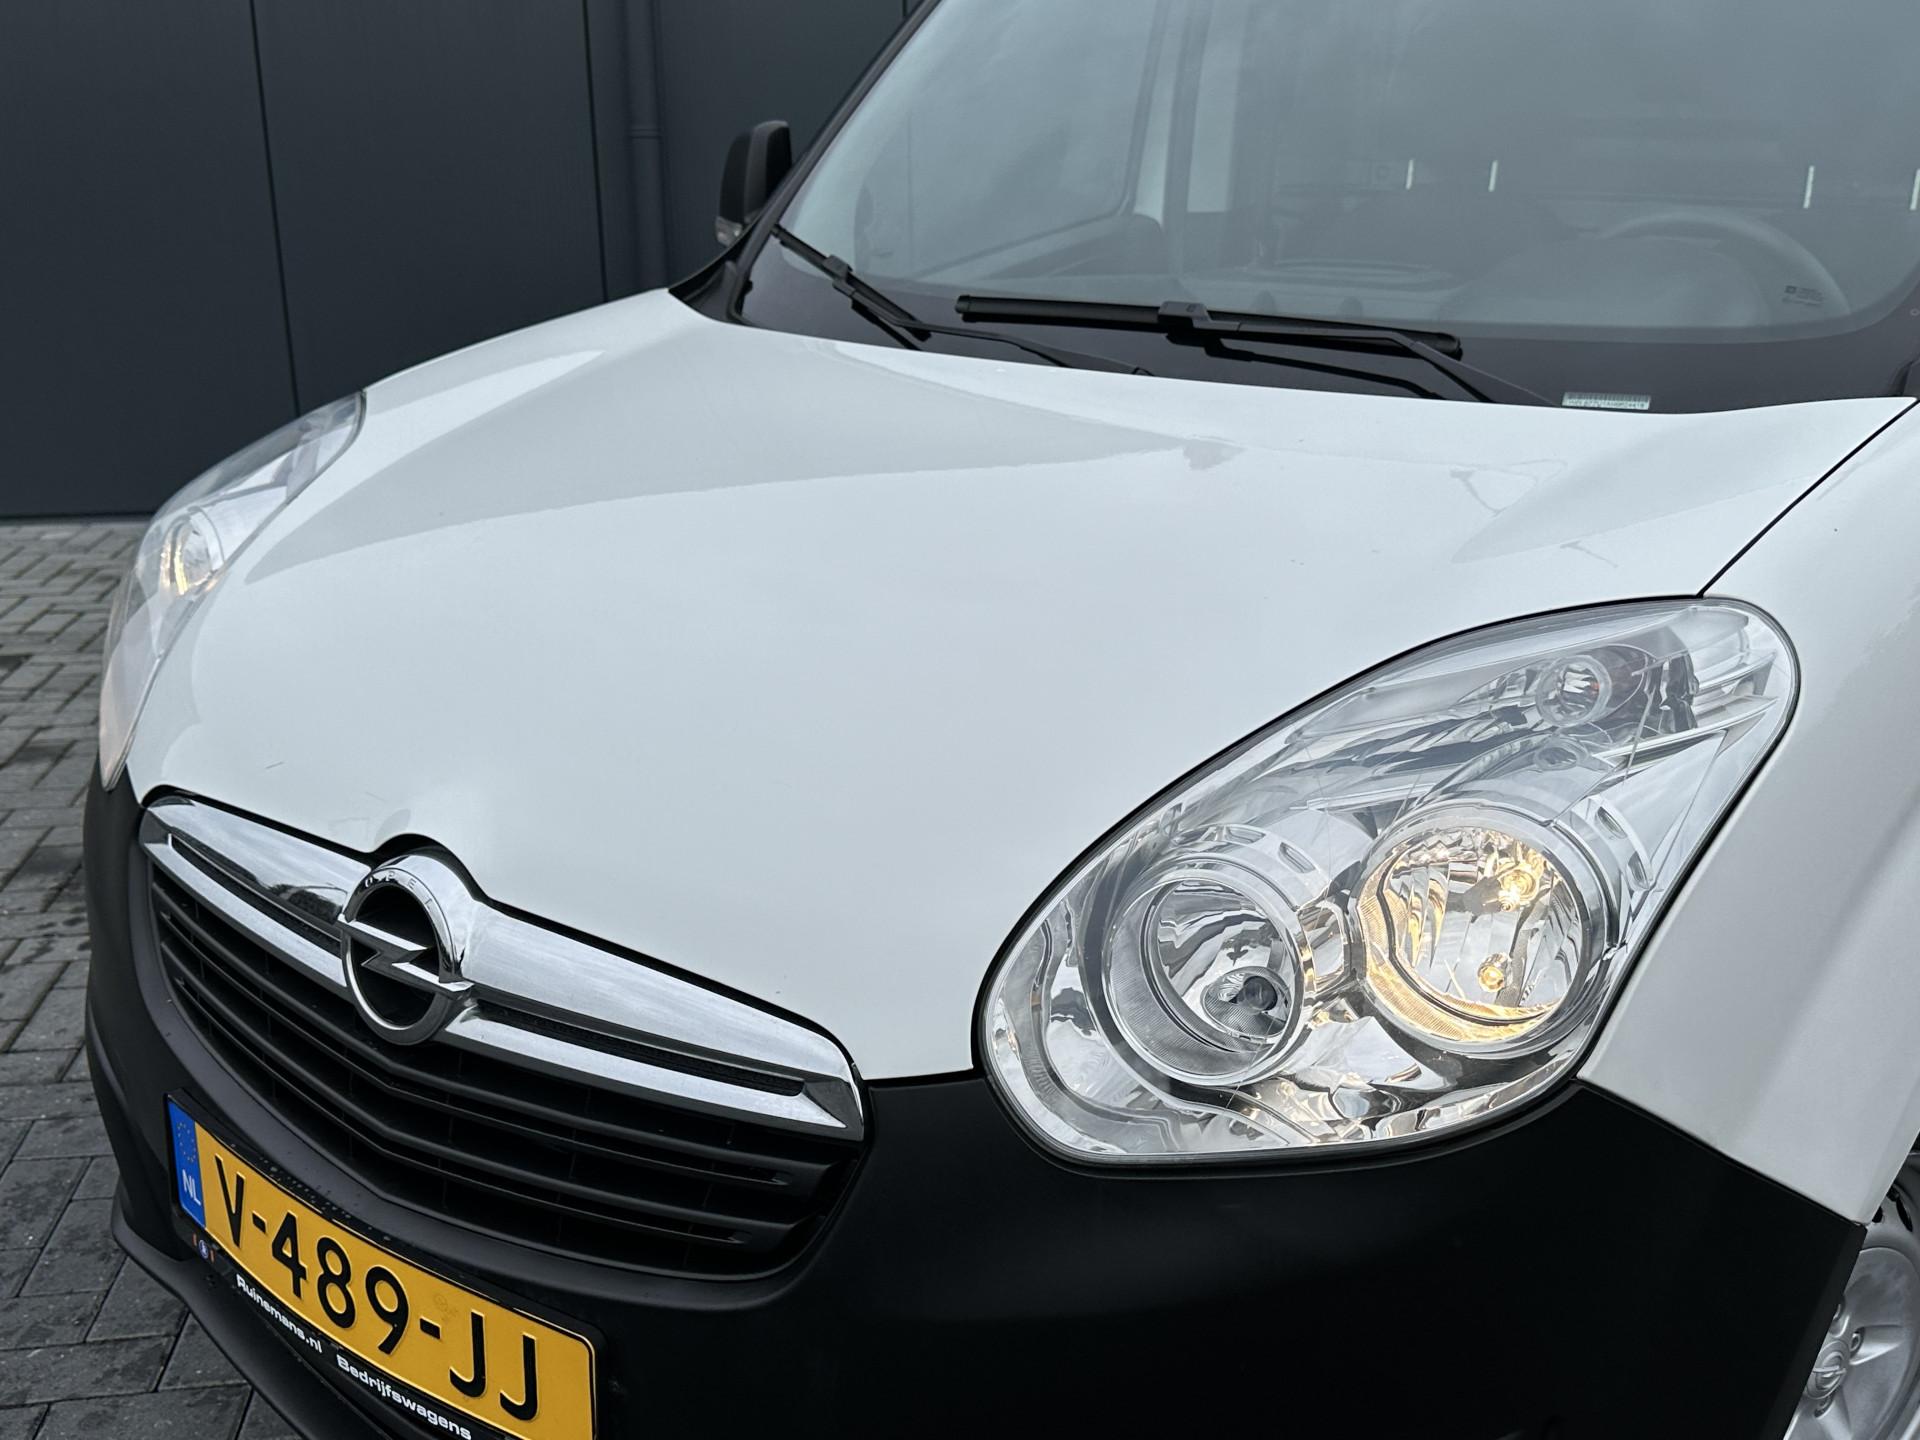 Foto 11 van Opel Combo 1.3 CDTi 100 PK EURO 6 / L1H1 / IMPERIAAL / AIRCO / 86.440 KM / NETTE BUS / SCHUIFDEUR